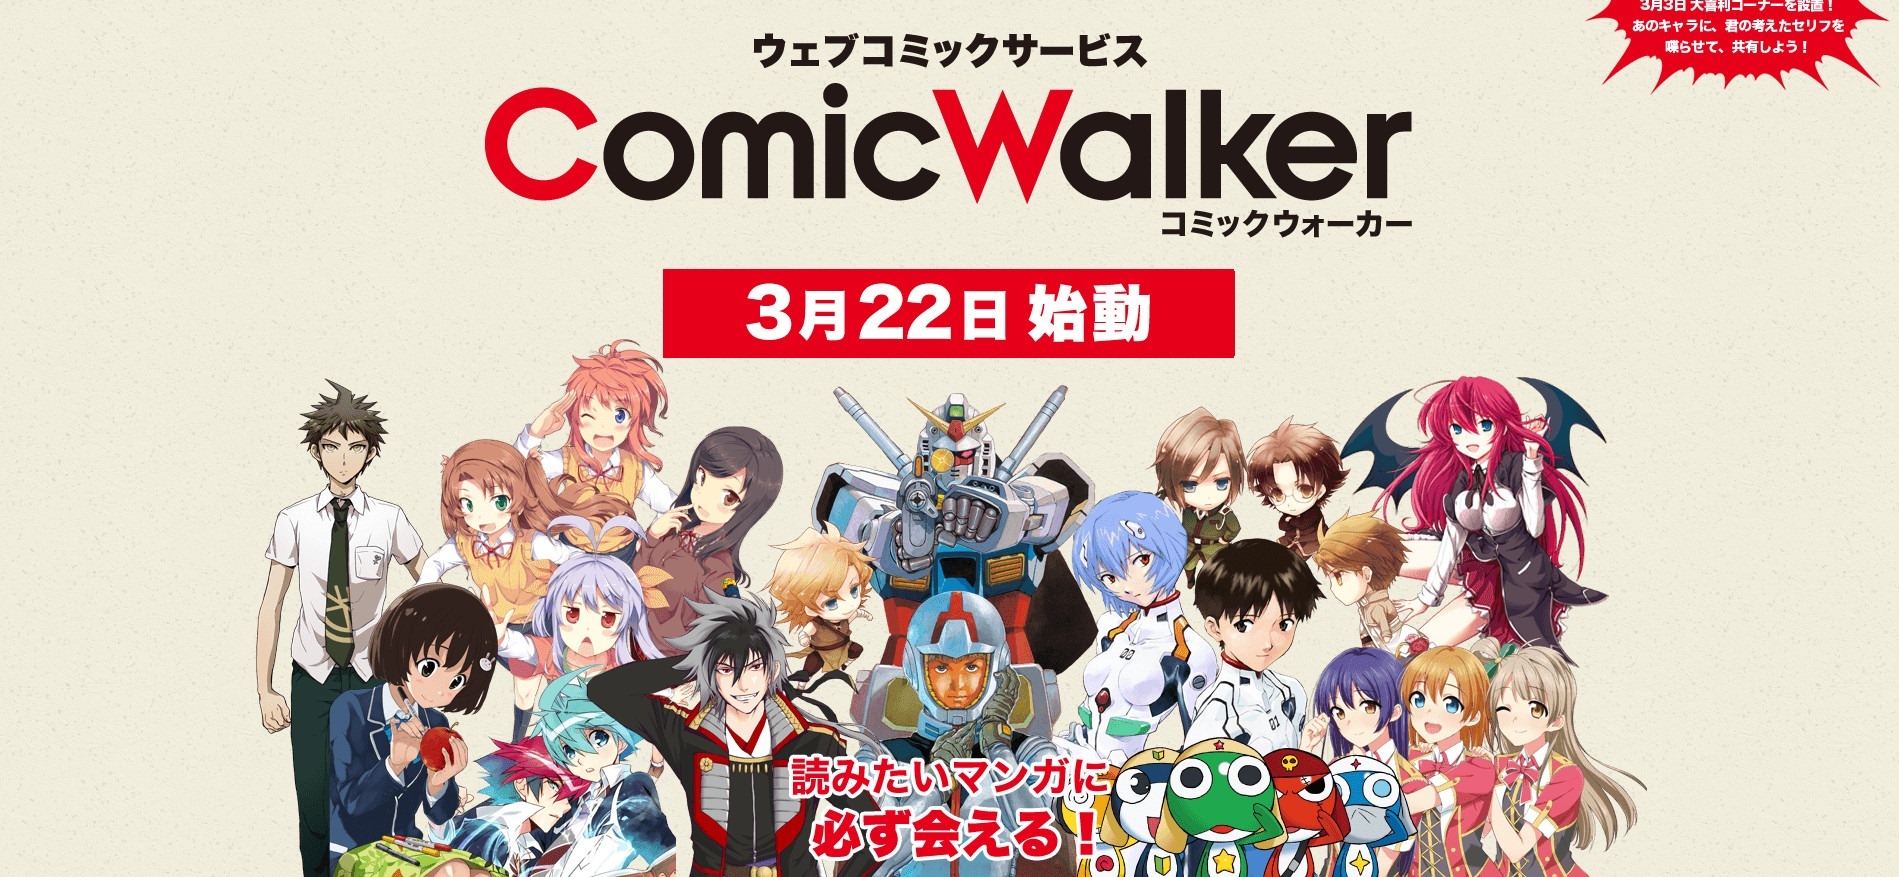 La aplicación incluye decenas de manga popular, incluyendo Mobile Suit Gundam y Neon Genesis Evangelion.